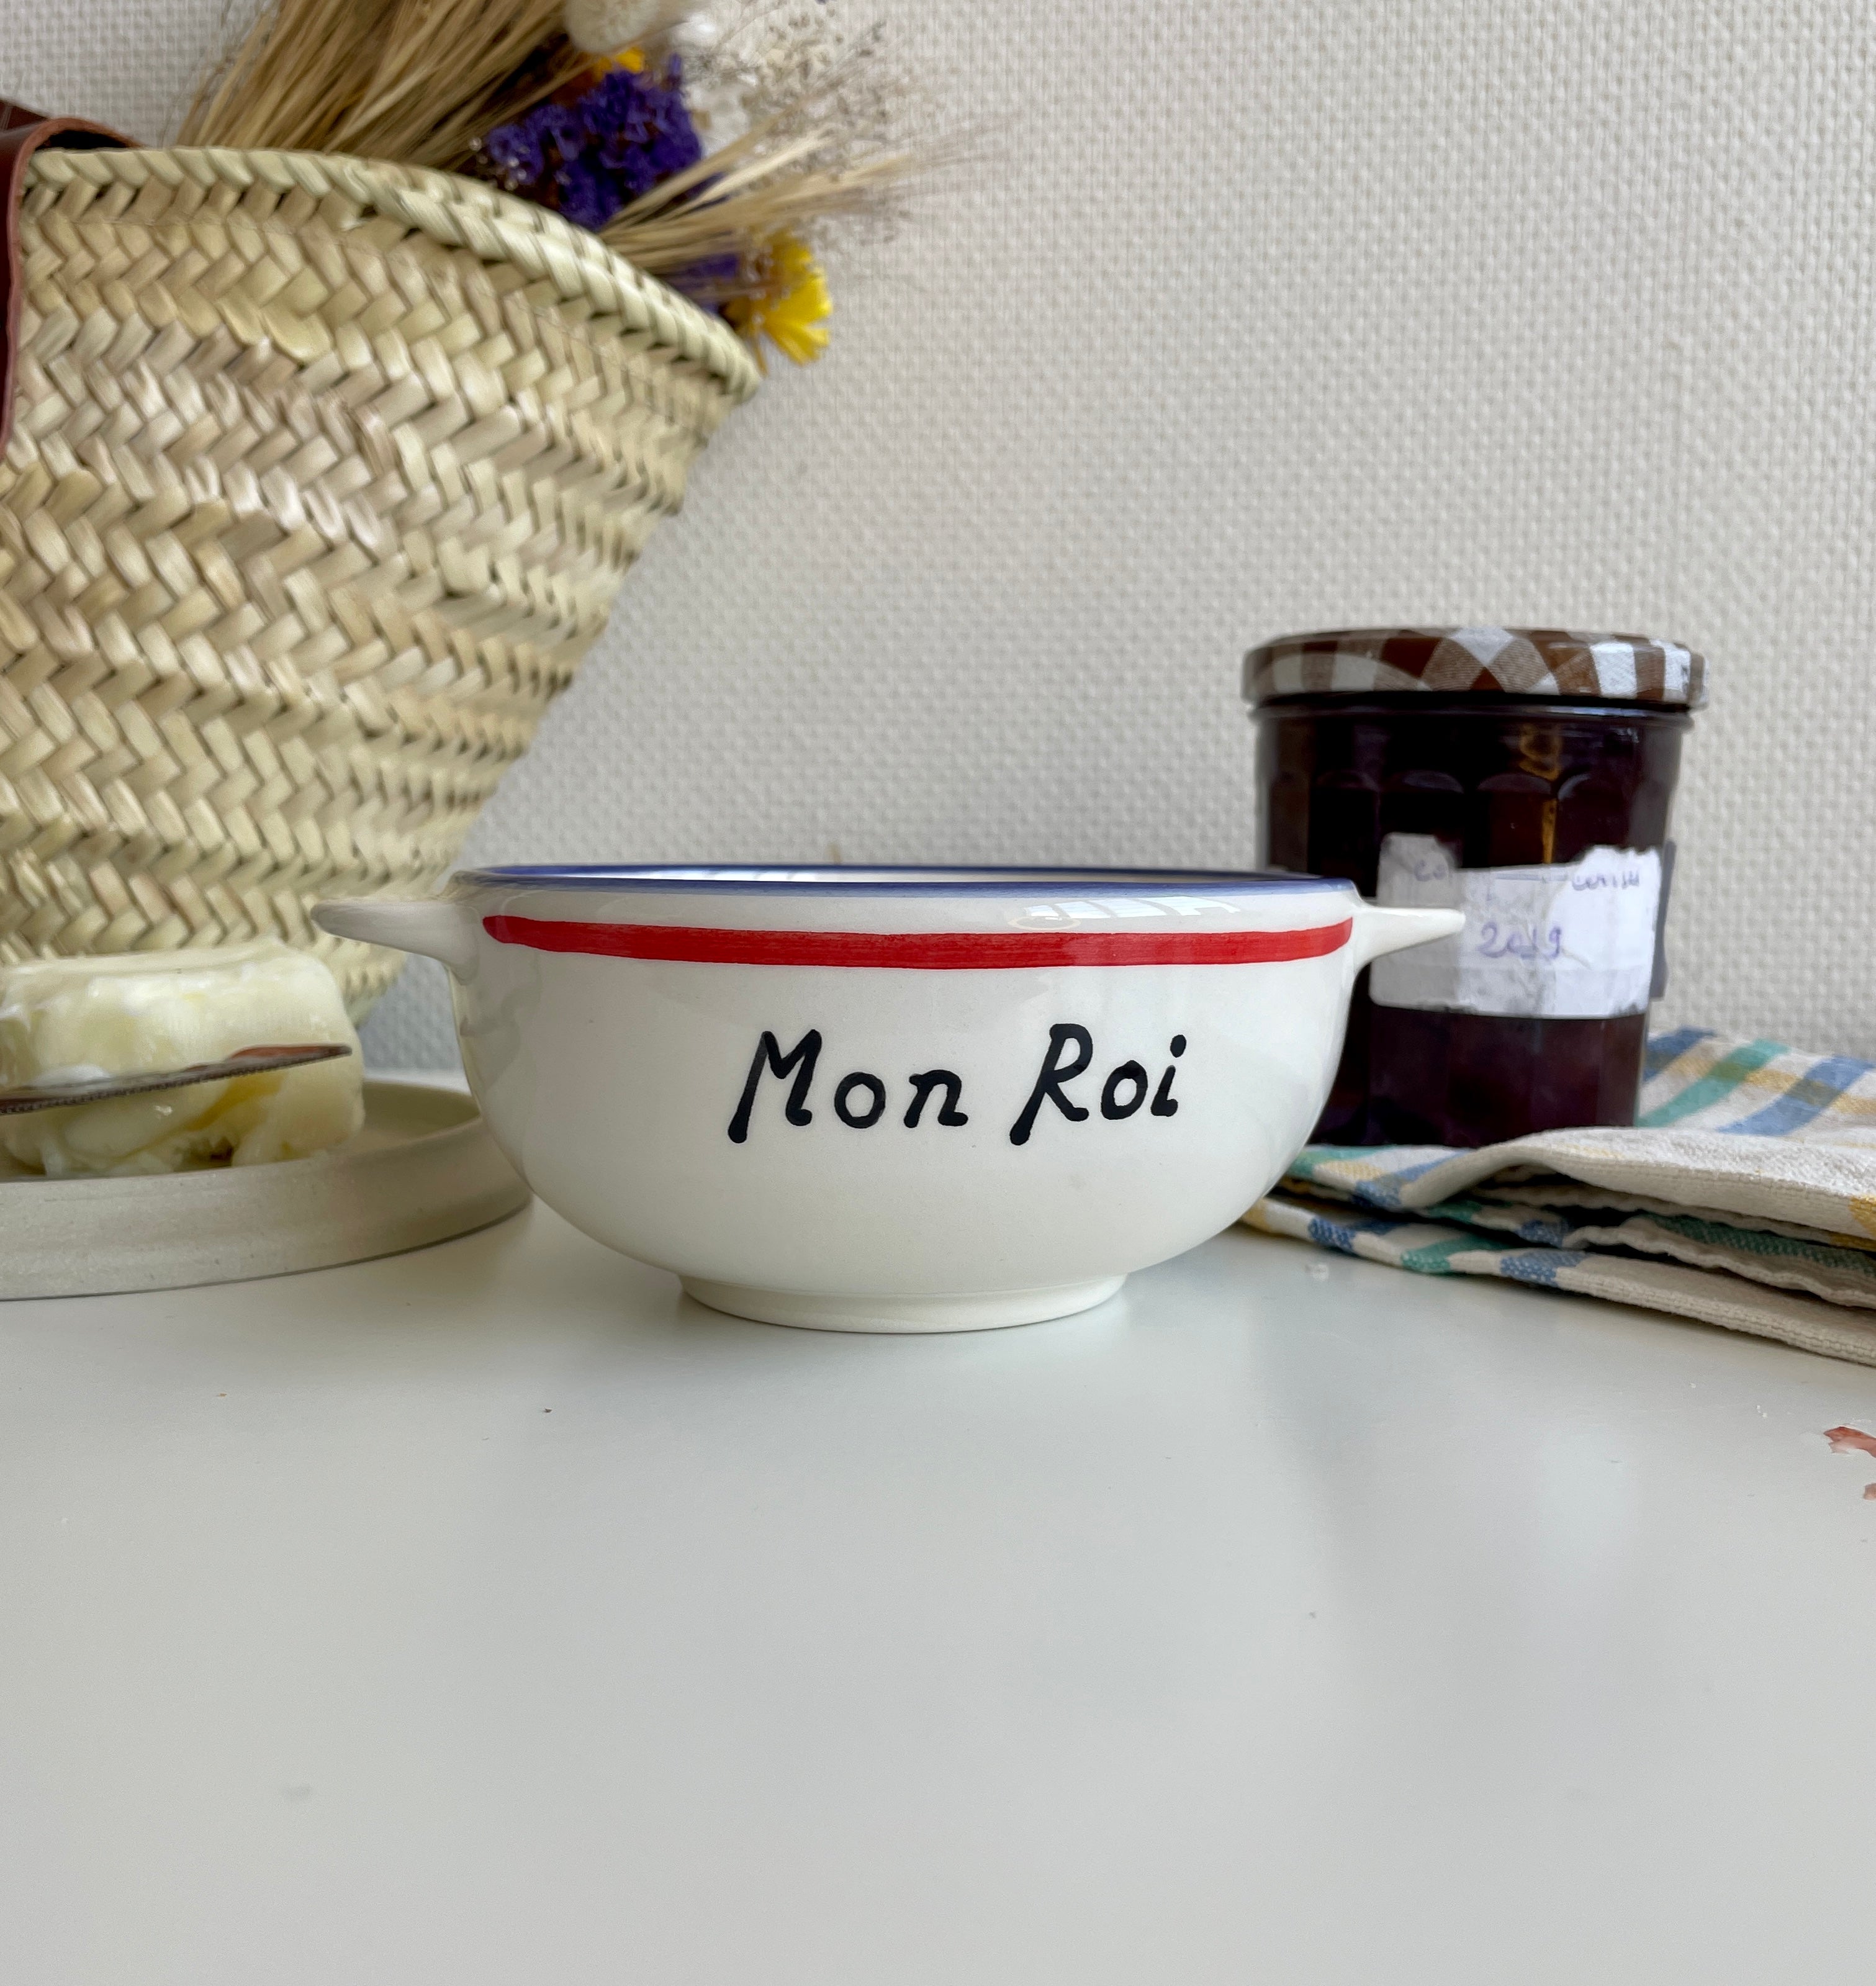 Affiche cadeau de famille personnalisée avec bols bretons